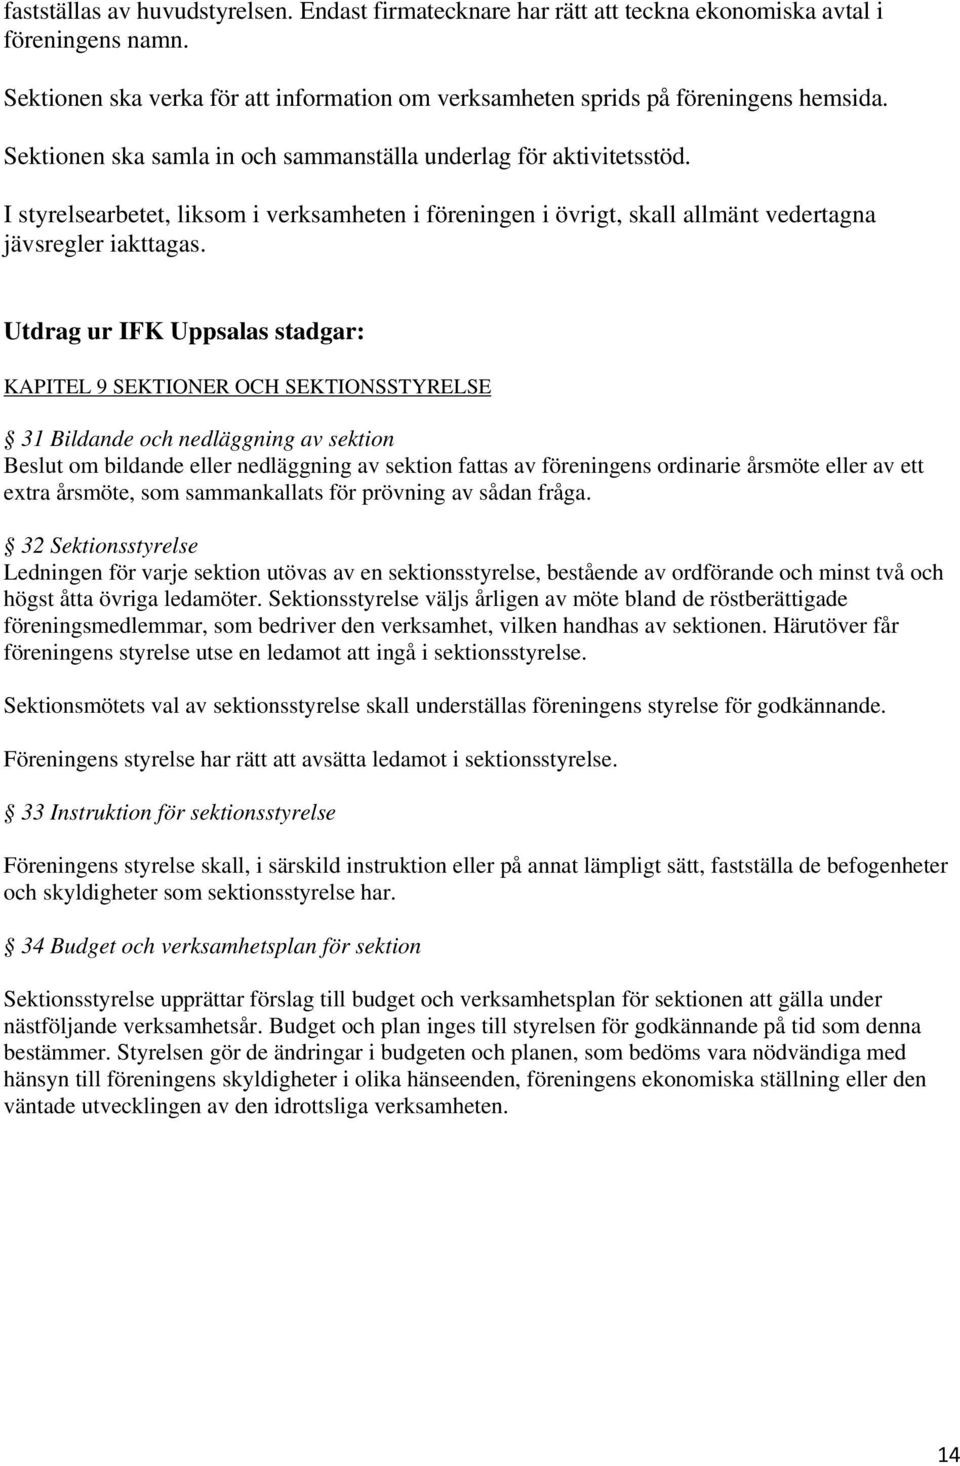 Utdrag ur IFK Uppsalas stadgar: KAPITEL 9 SEKTIONER OCH SEKTIONSSTYRELSE 31 Bildande och nedläggning av sektion Beslut om bildande eller nedläggning av sektion fattas av föreningens ordinarie årsmöte